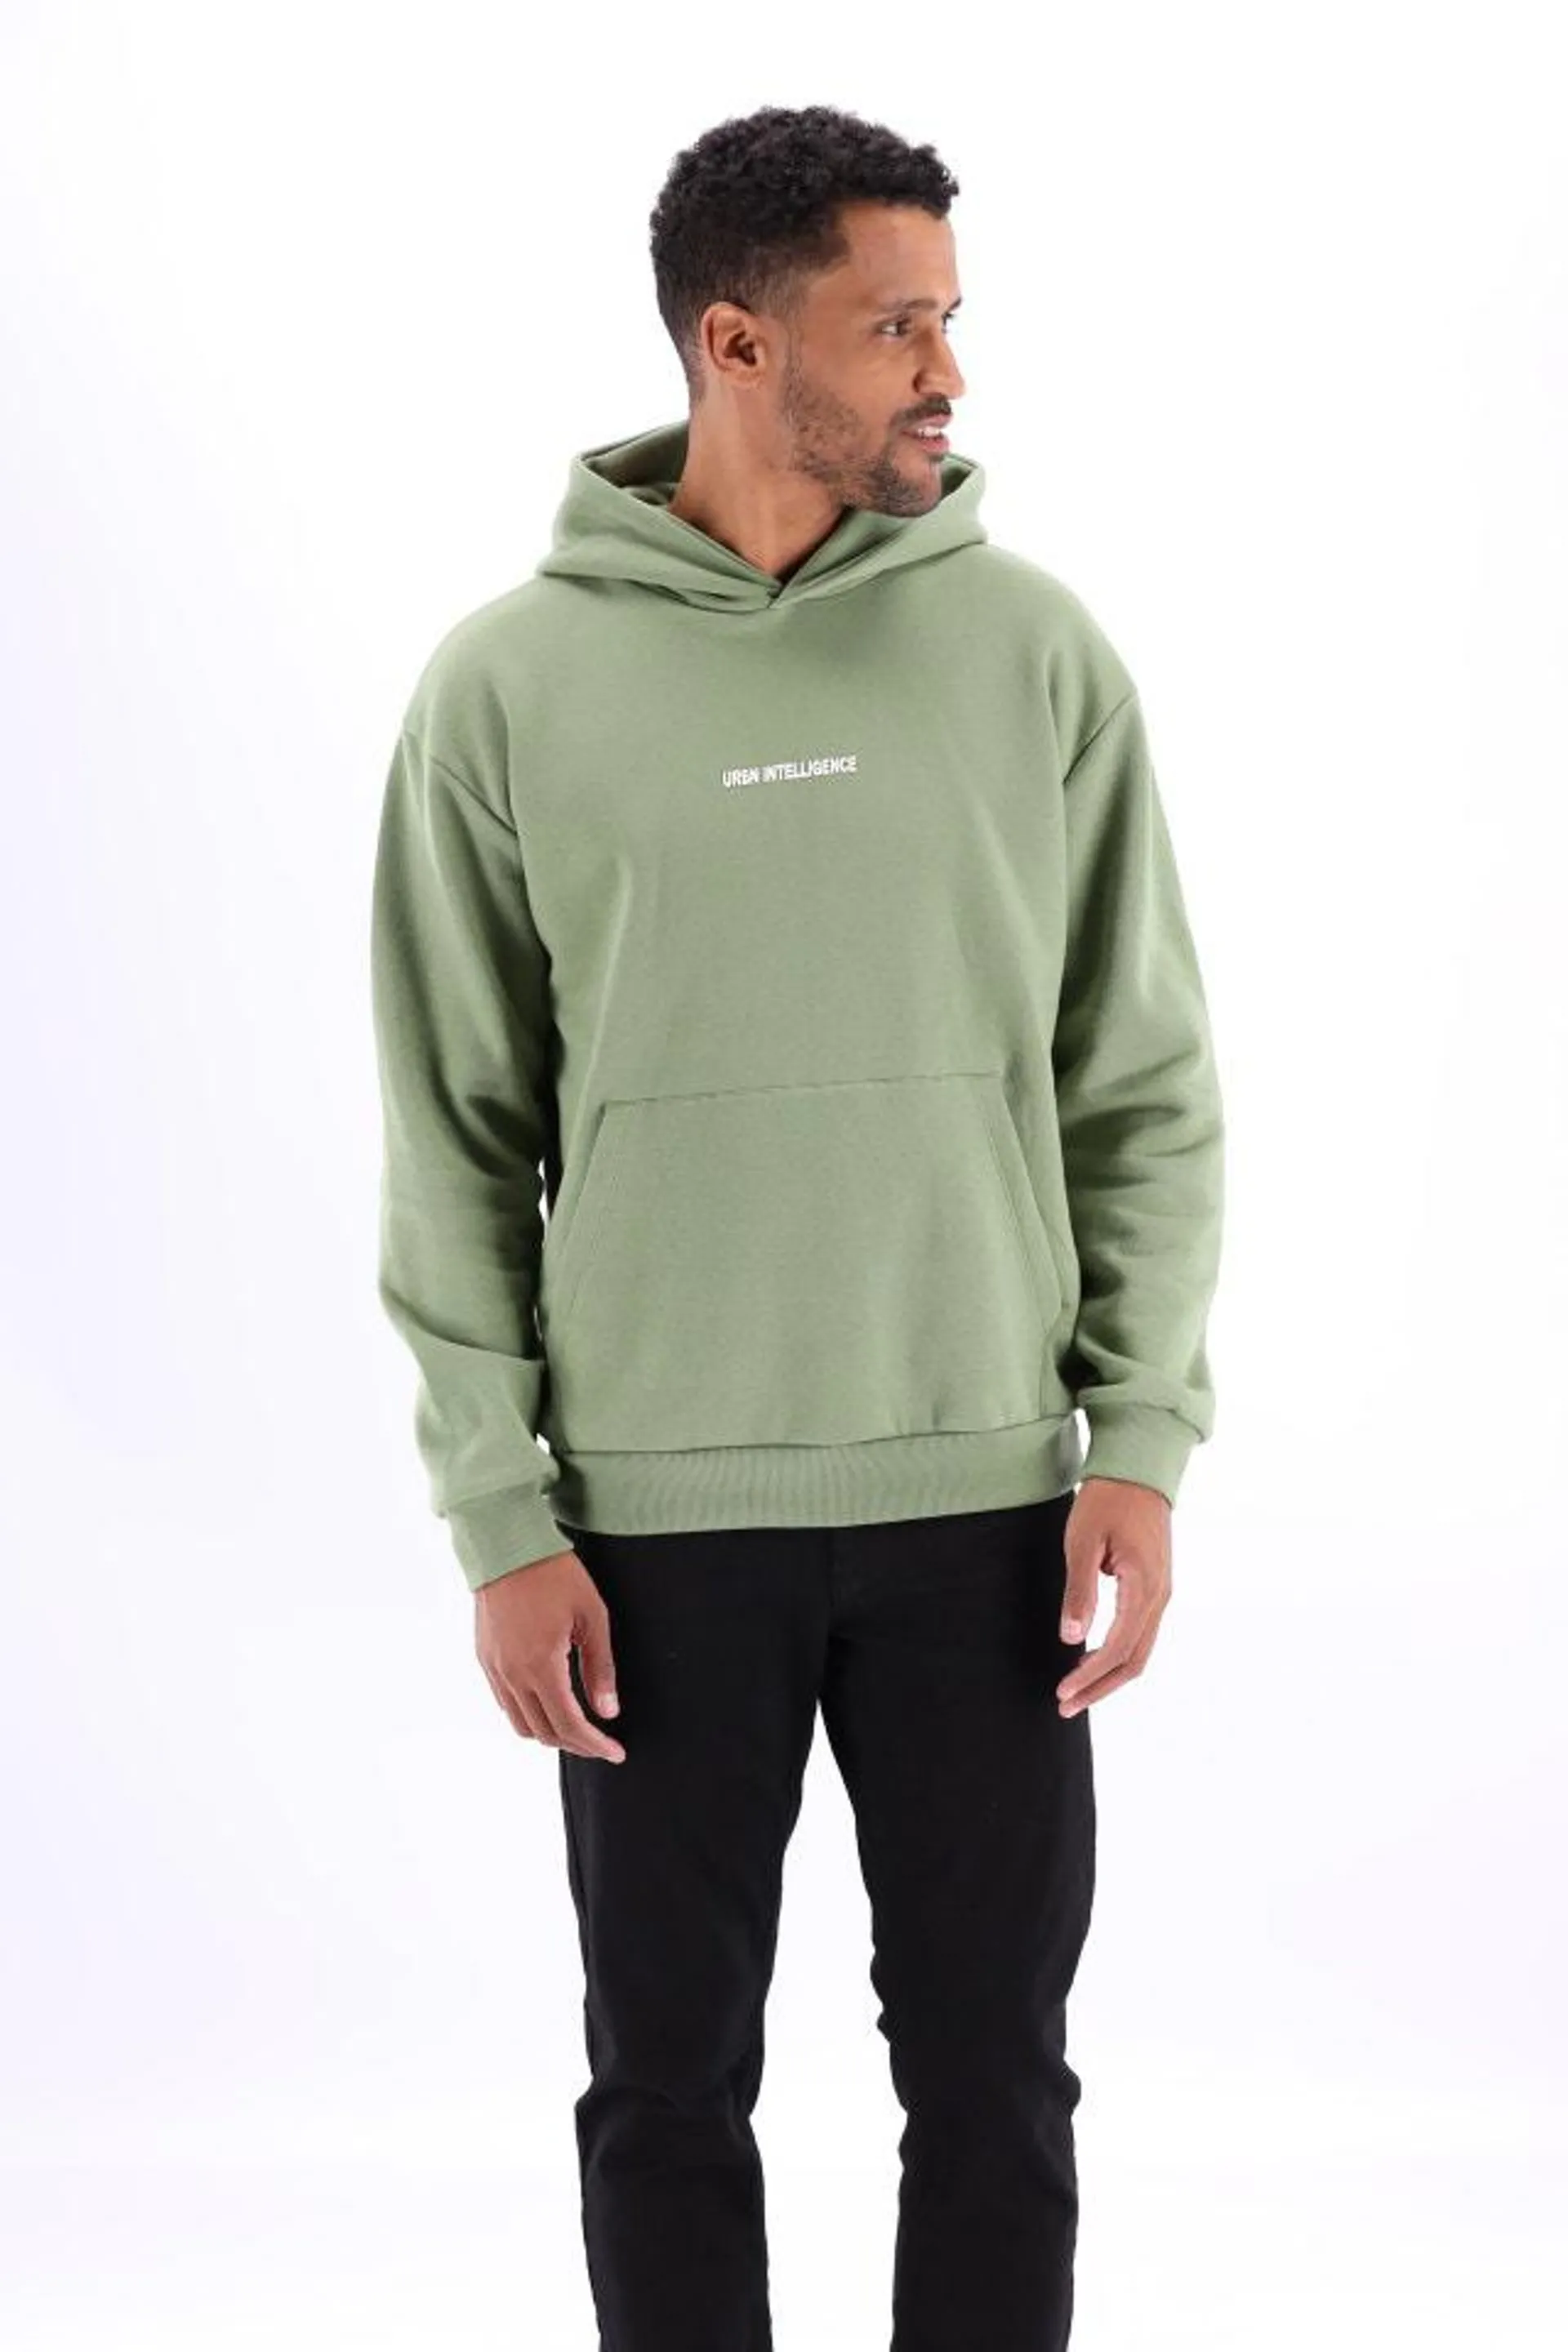 Groene hoodie 'Urban intelligence'